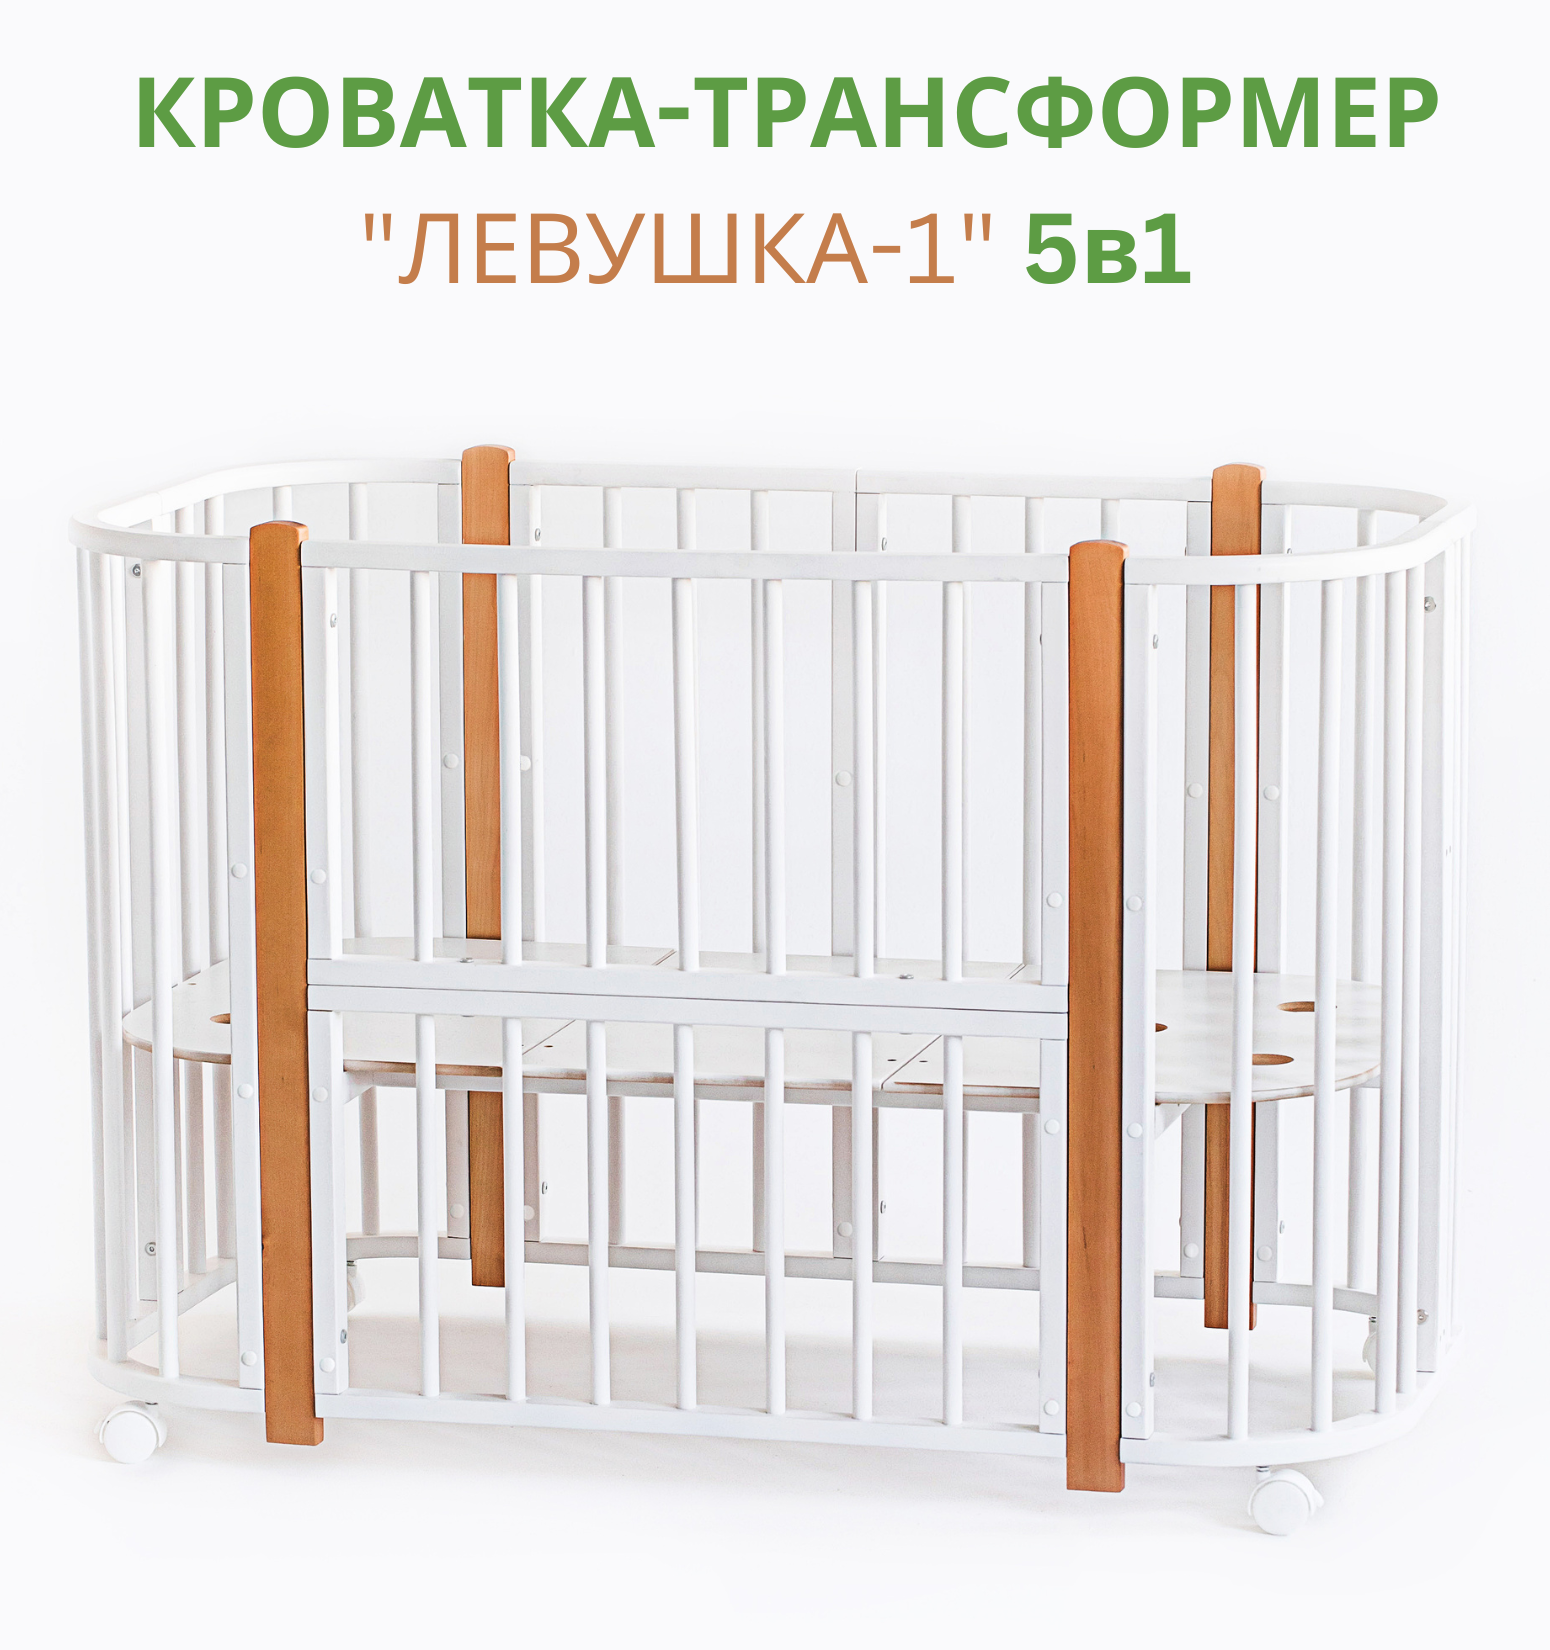 Кроватка трансформер Лёвушка-1 для новорожденного береза цвет белый бук 120х60 см 85х60 см